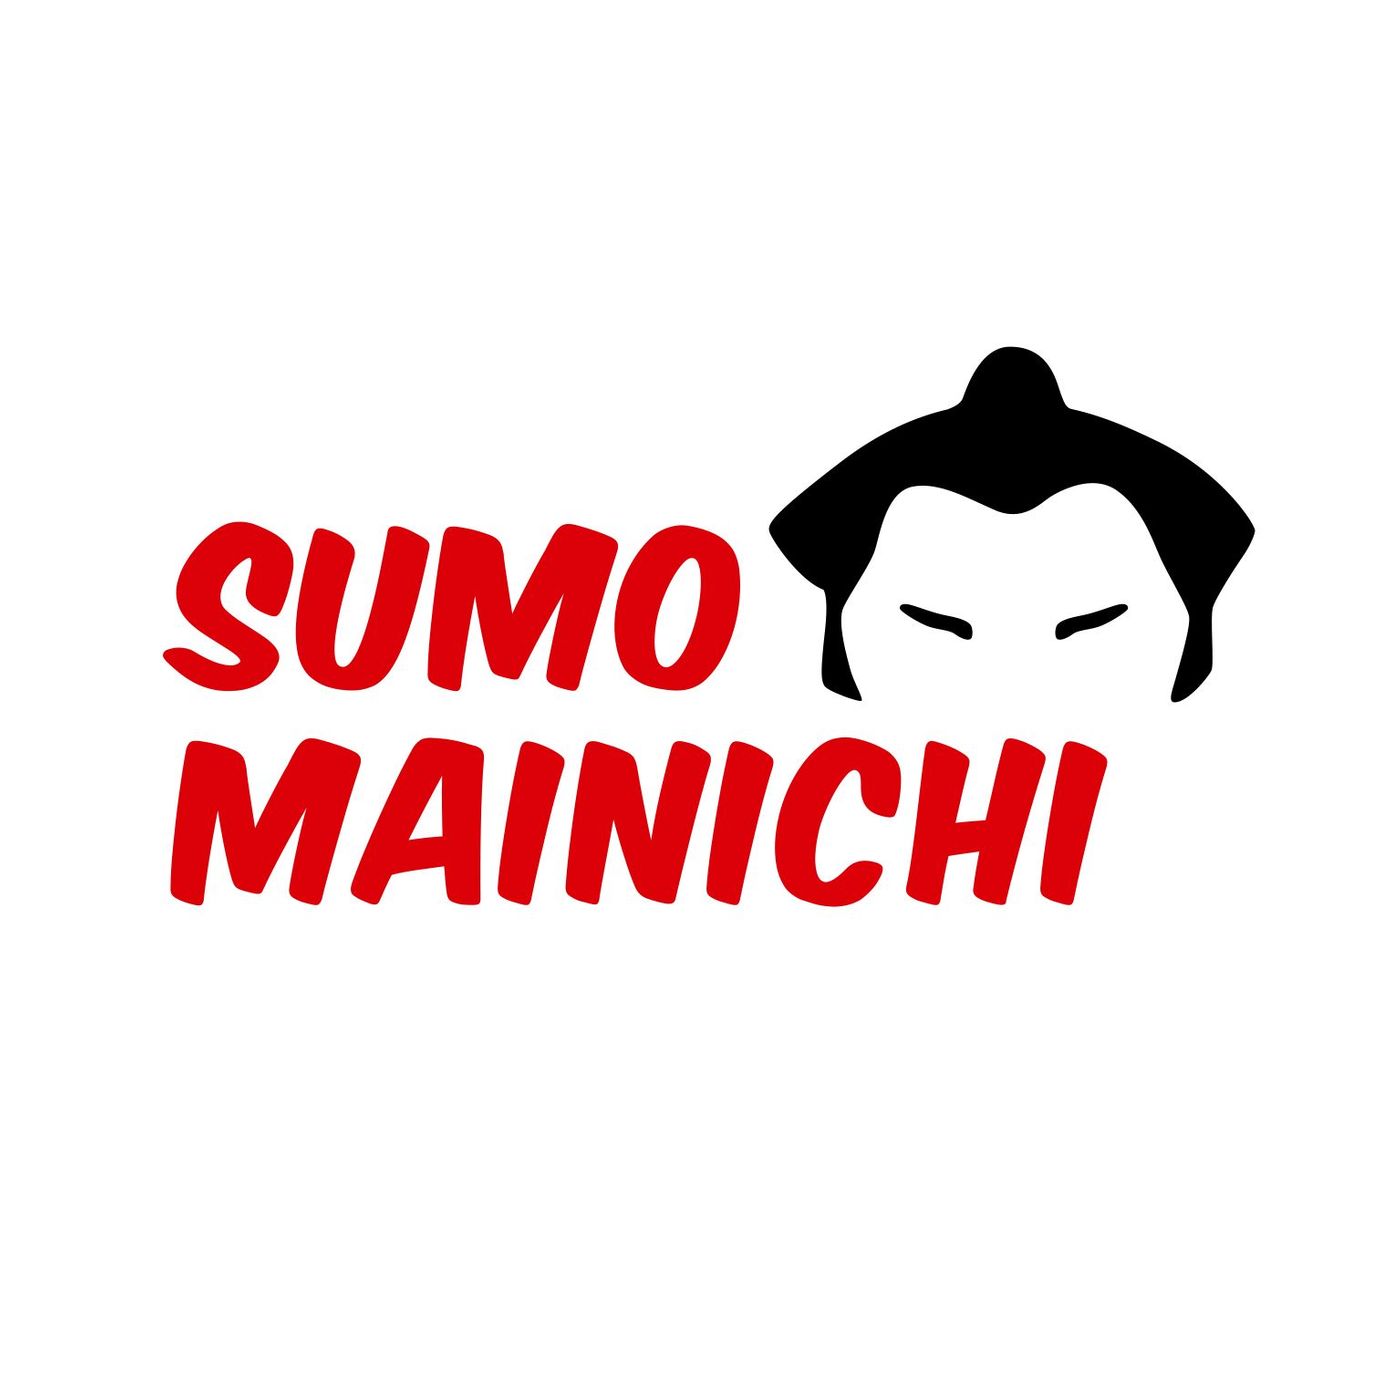 Sumo Mainichi - Day 6 - March 2021